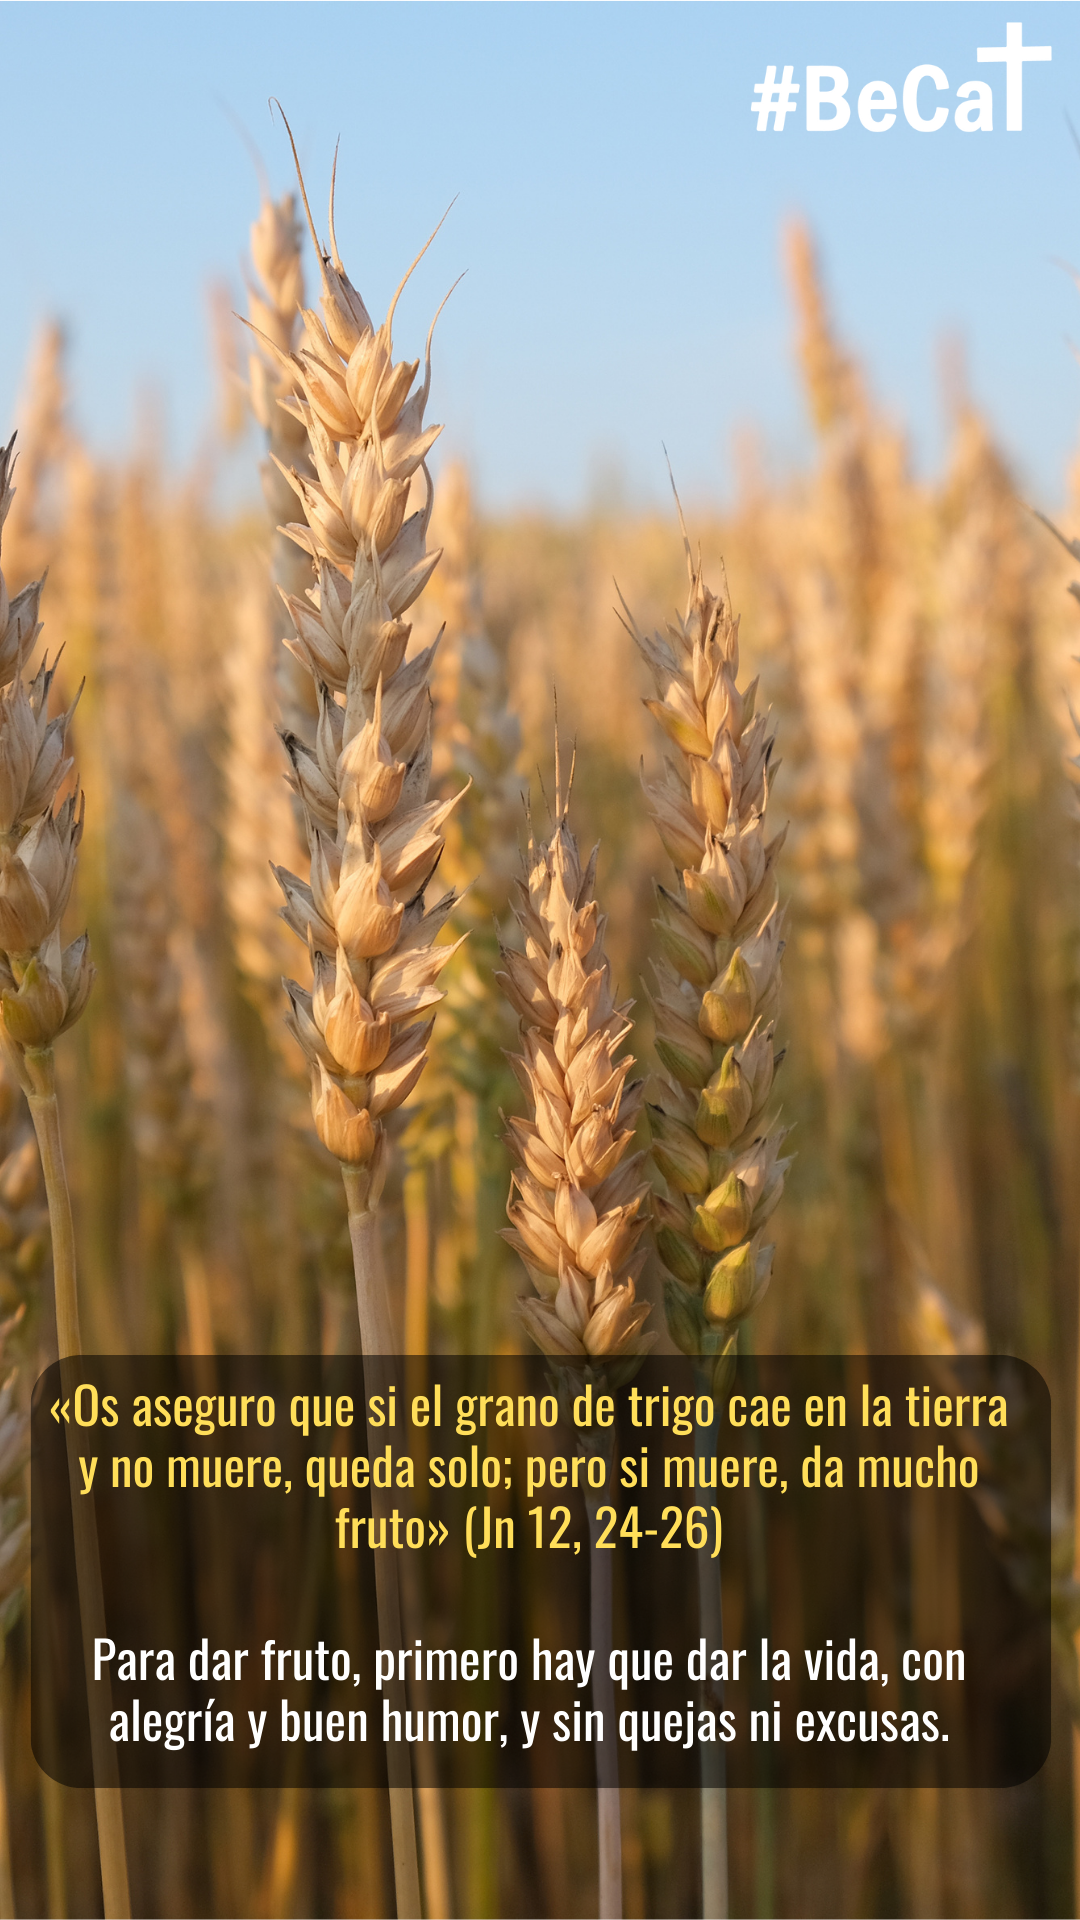 El grano de trigo